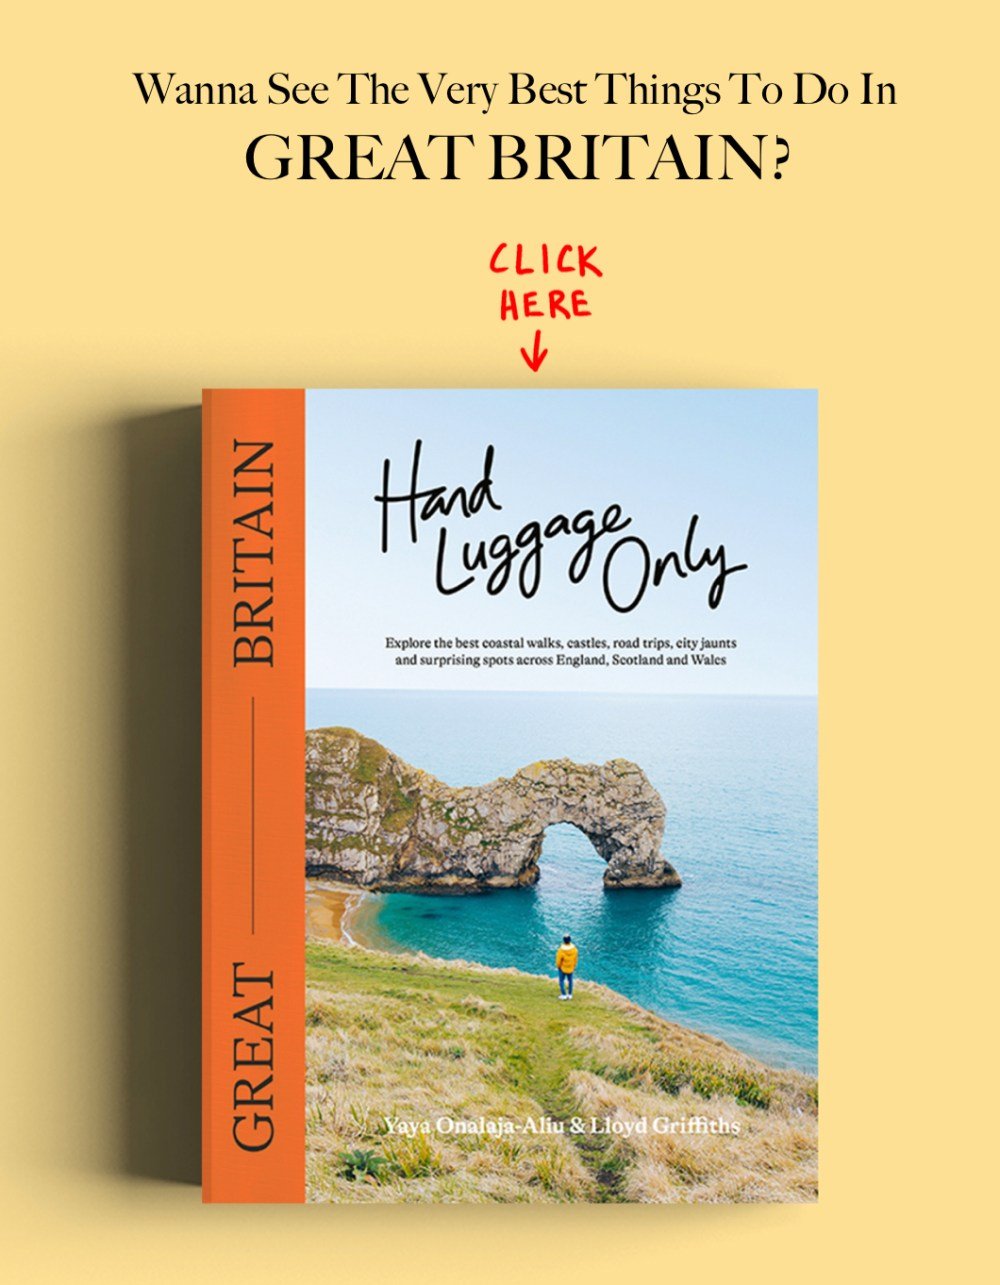 Worls Travel Great Britain Travel Book Advert Banner